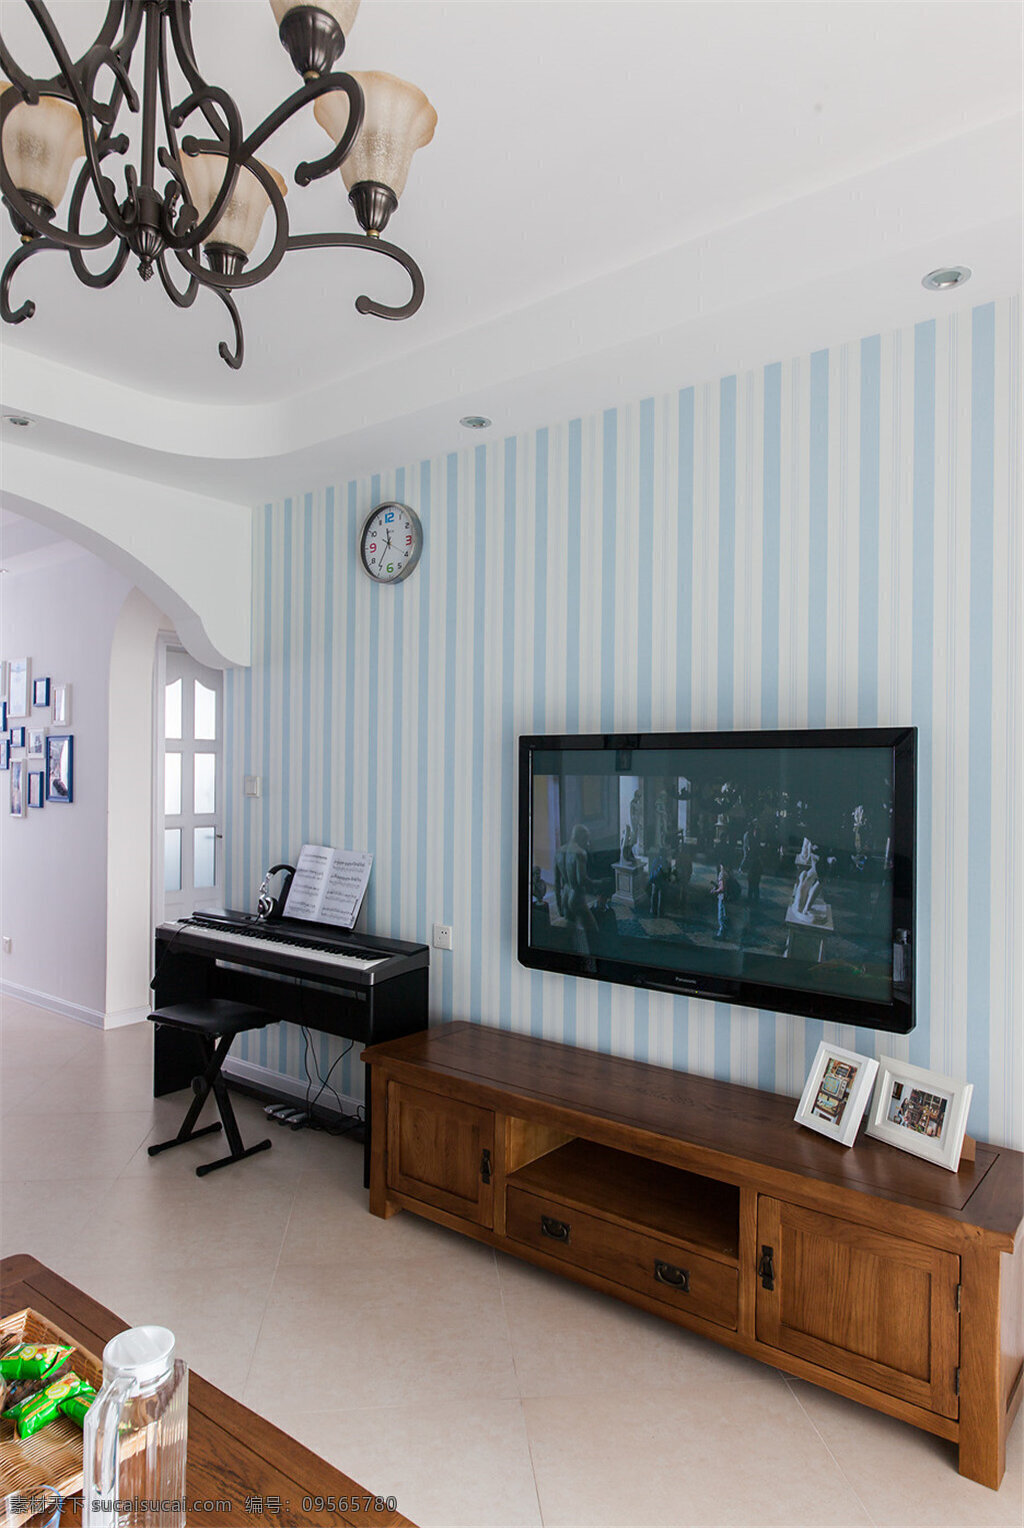 时尚 温馨 清新 客厅 钢琴 挂钟 高清 电视机 装修 效果图 玄关